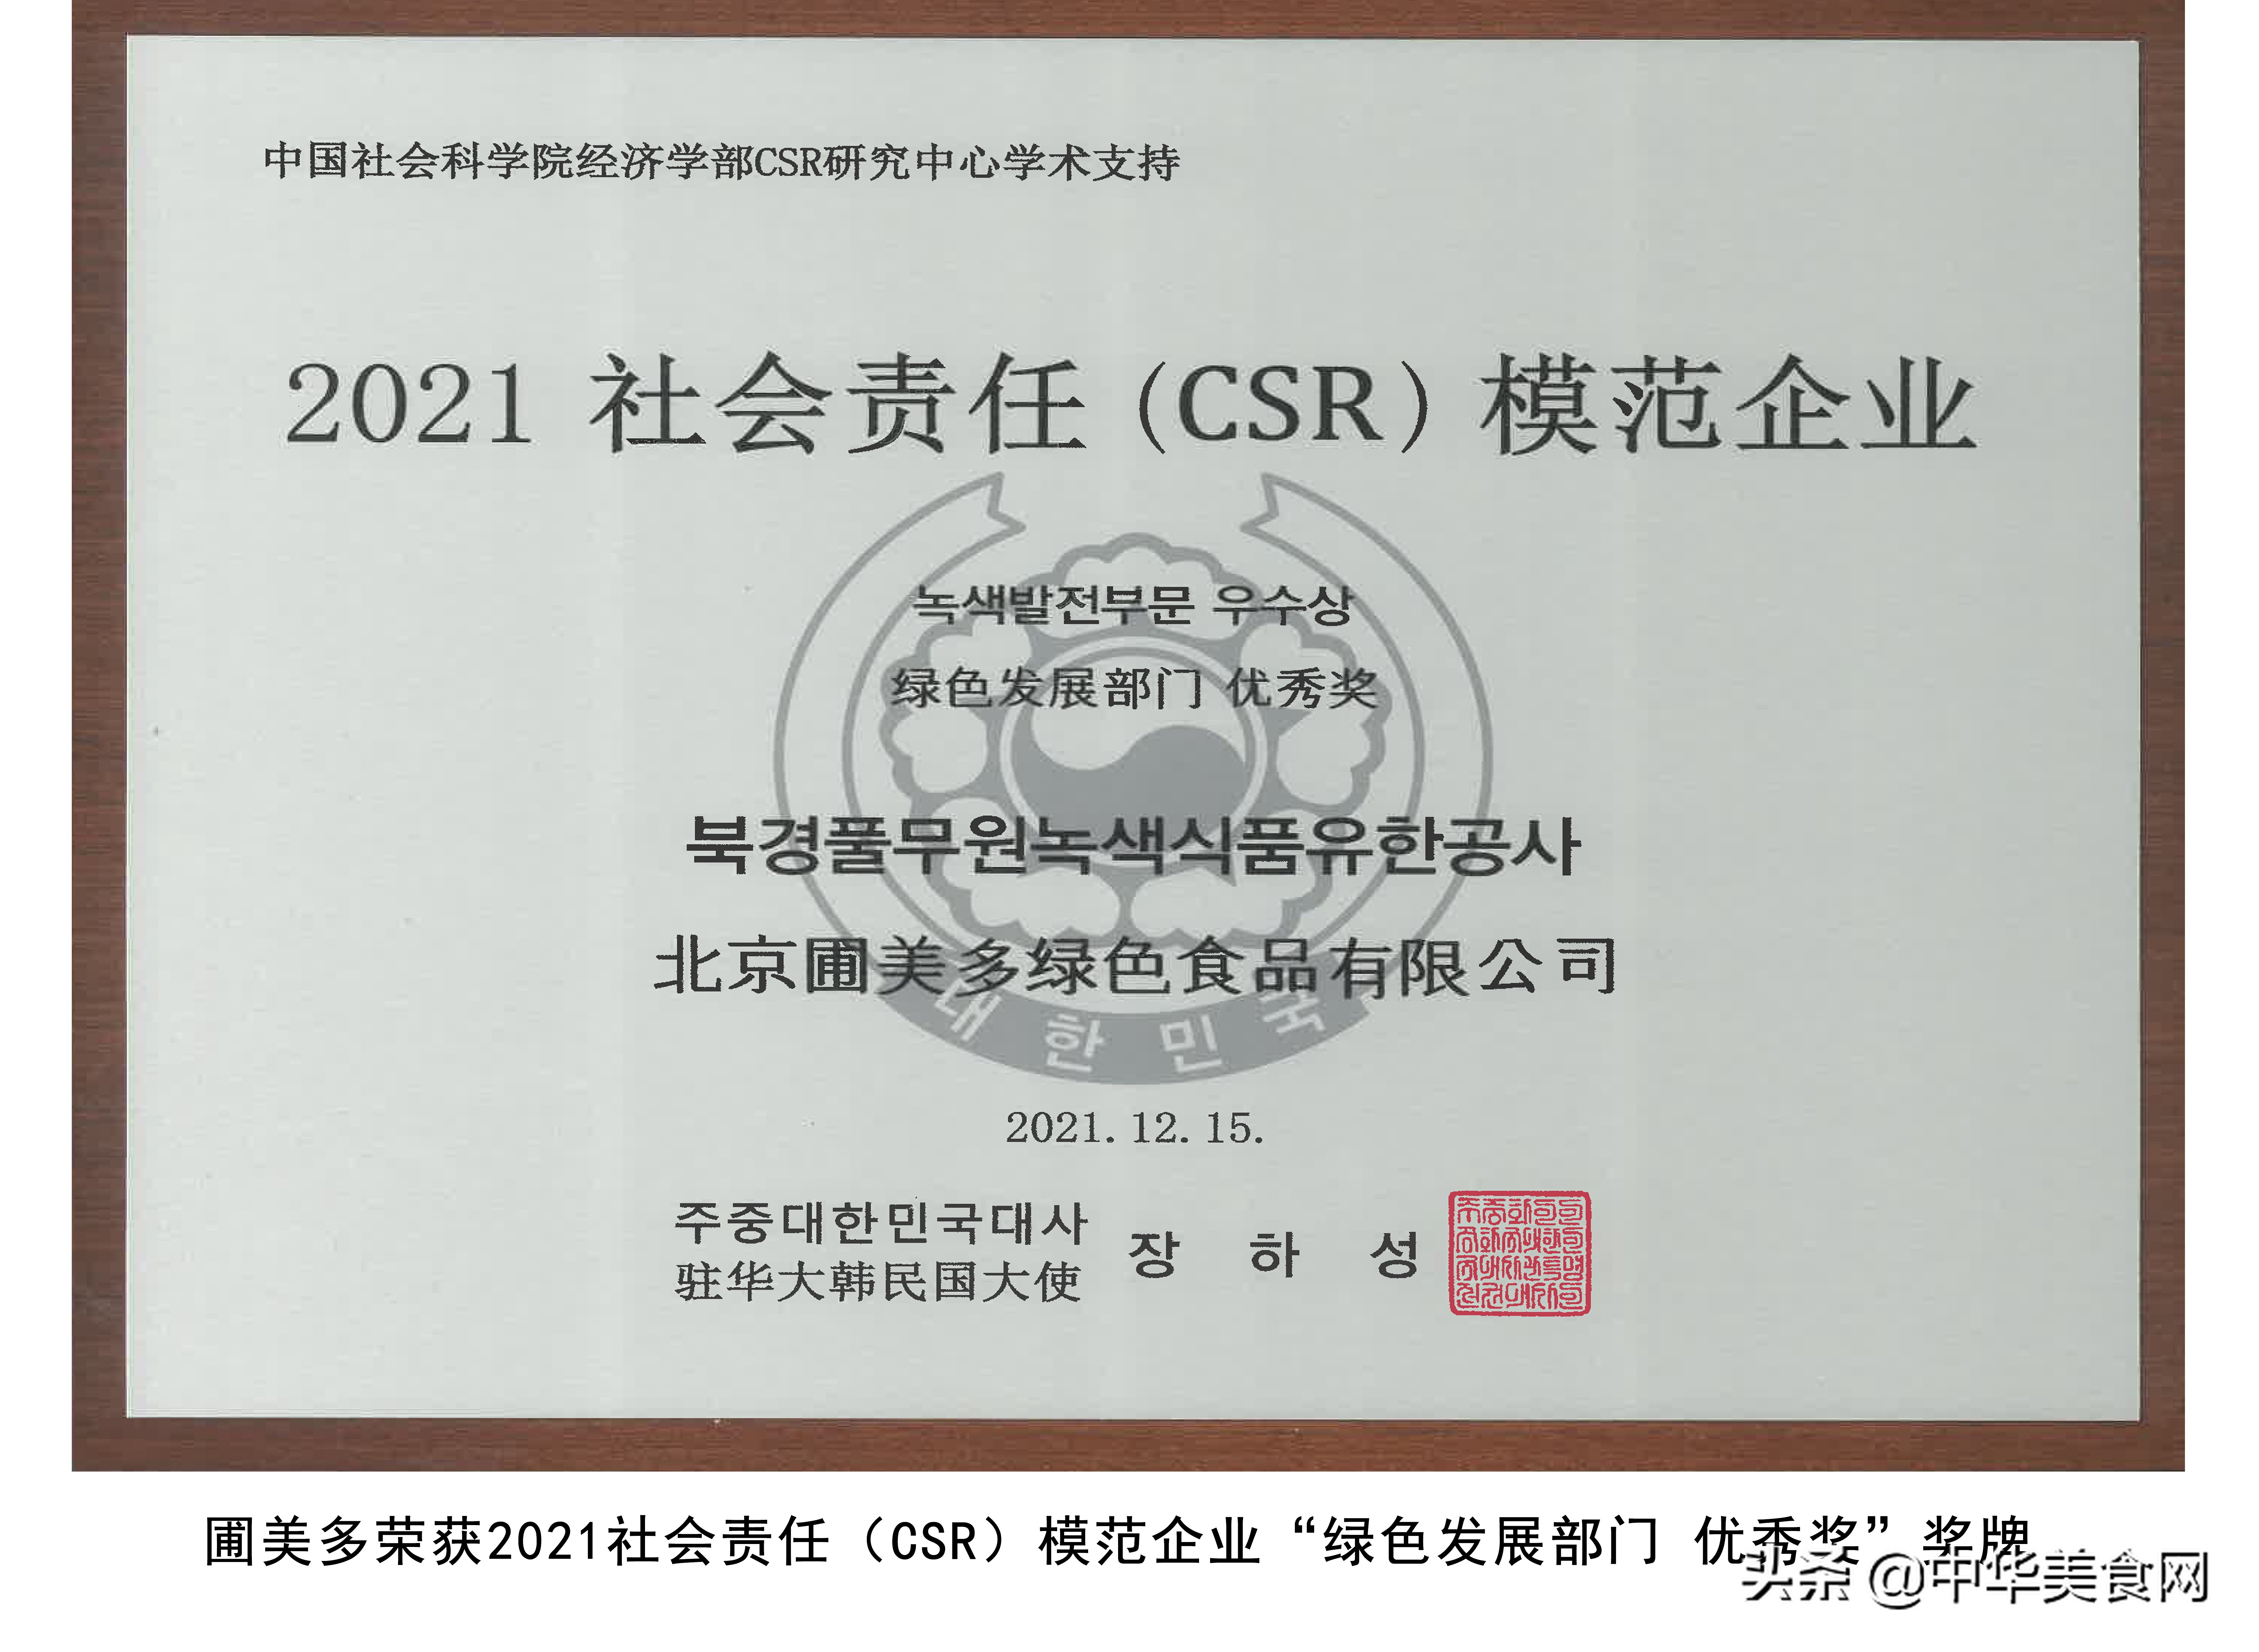 圃美多荣获2021社会责任（CSR）模范企业“绿色发展部门优秀奖”